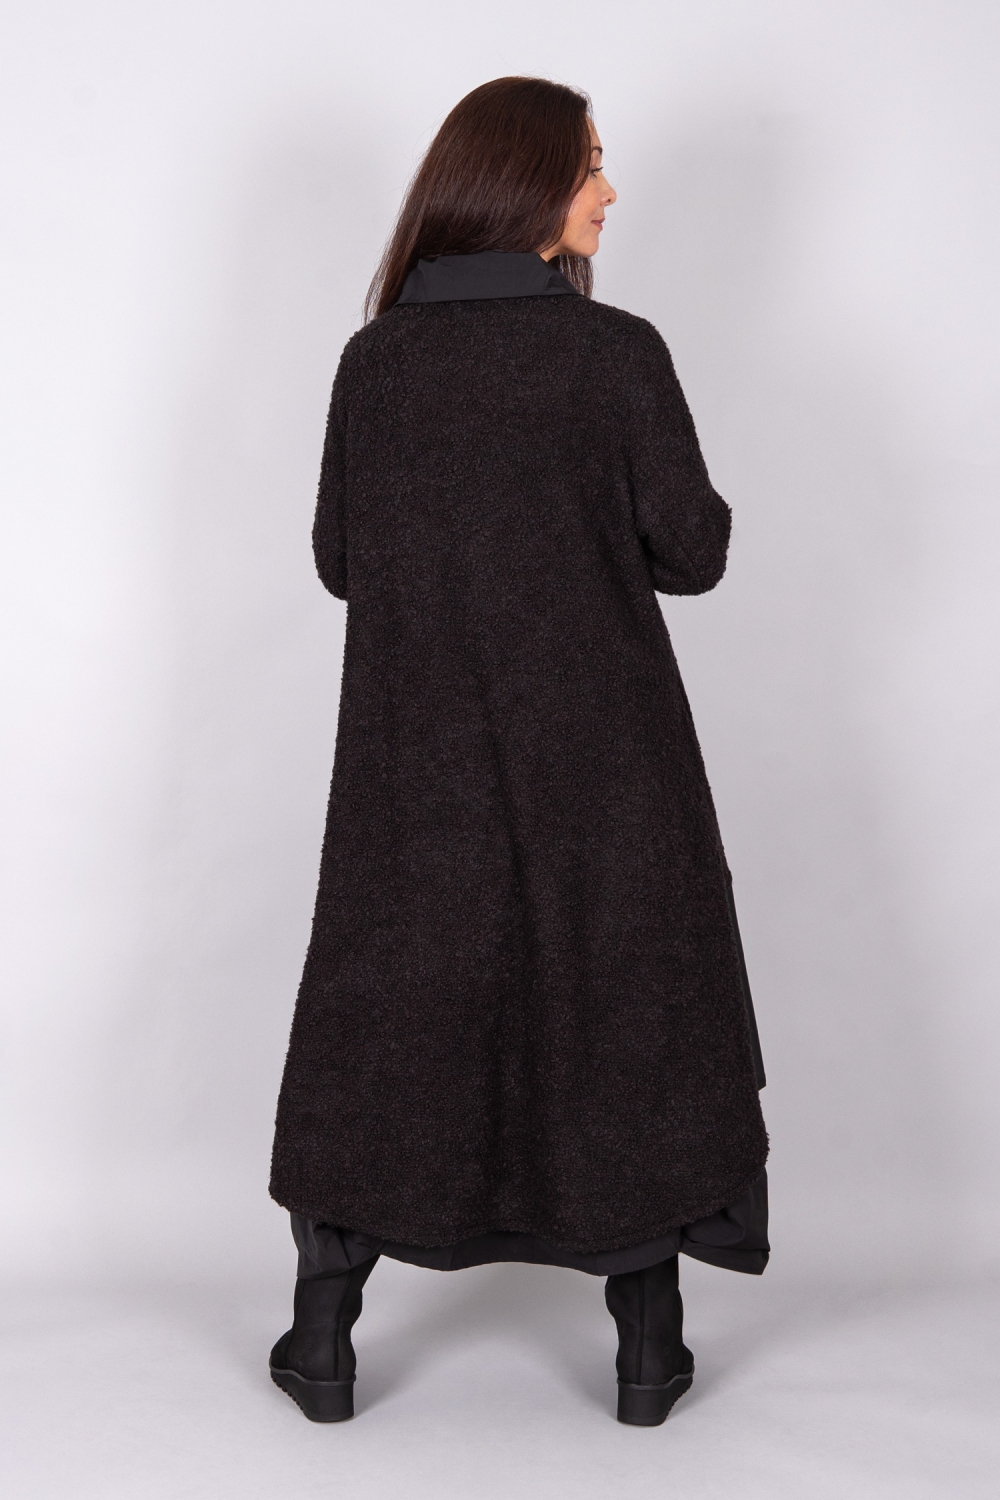 Ellipse Kleid in A-Form aus Bouclé kombiniert mit Taft in schwarz